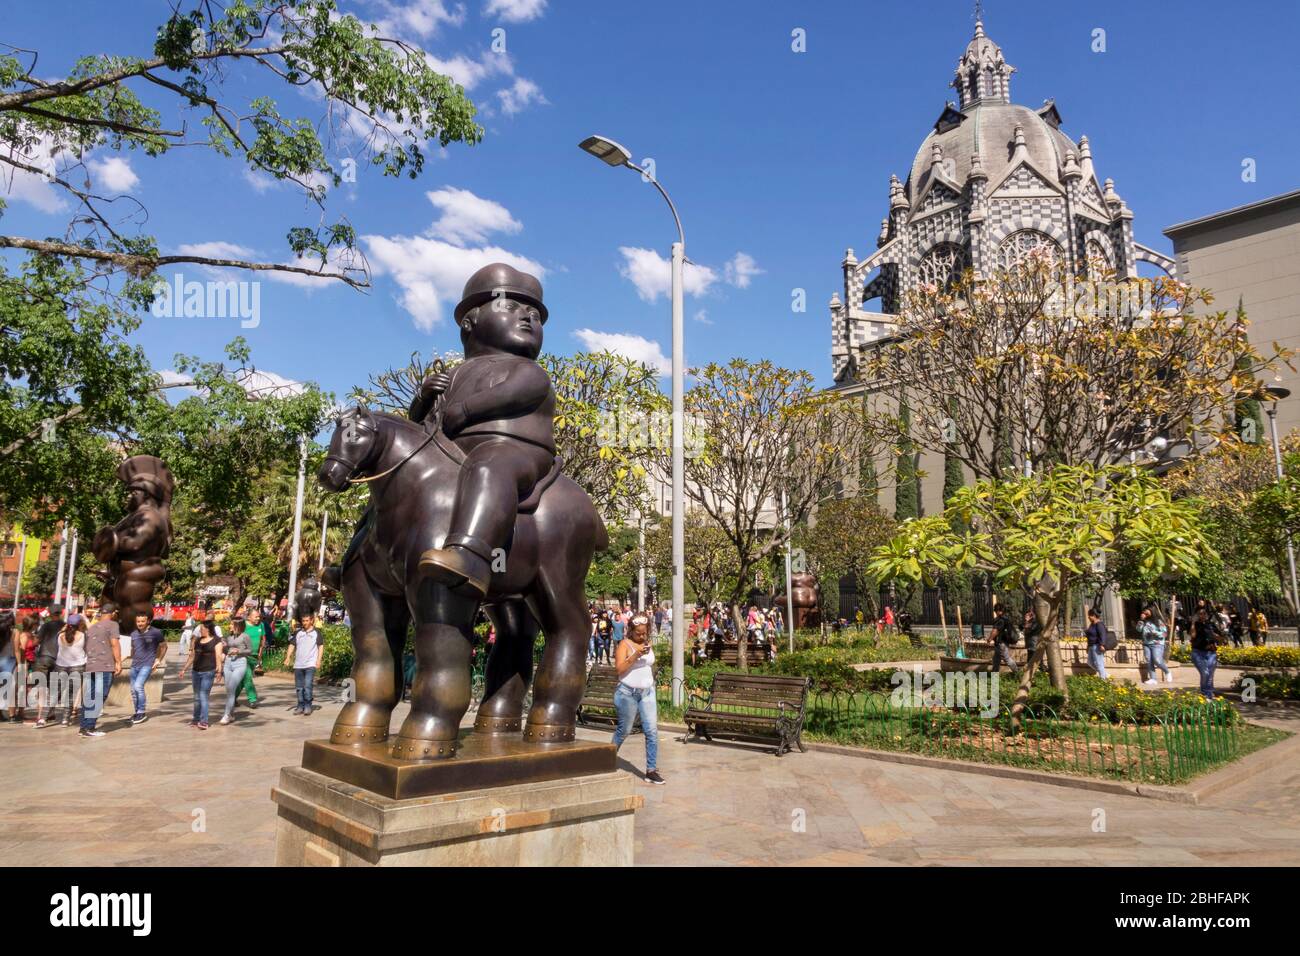 Medellin, Kolumbien - 08. Januar 2020: Die Plaza Botero enthält 23 Skulpturen, die von Medellins Sohn und Kolumbiens berühmtestem Künstler gestiftet wurden. Stockfoto